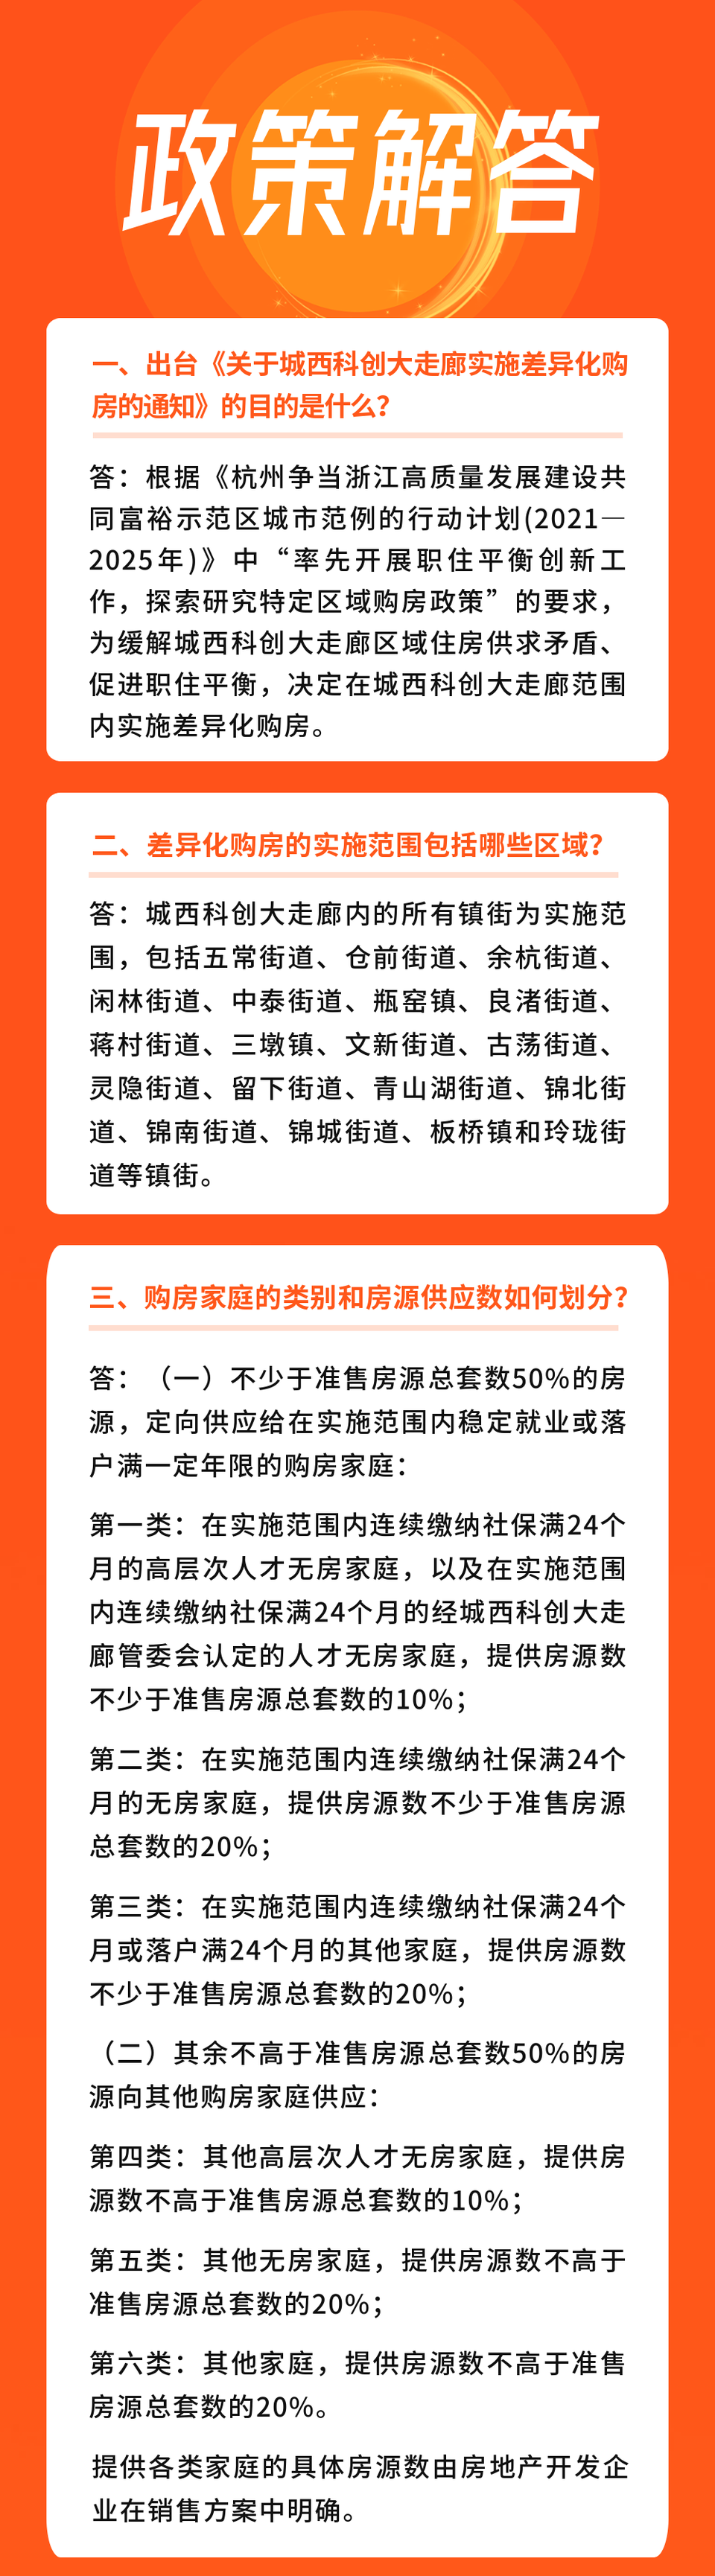 今天杭州城西科创大走廊实施差异化购房政策